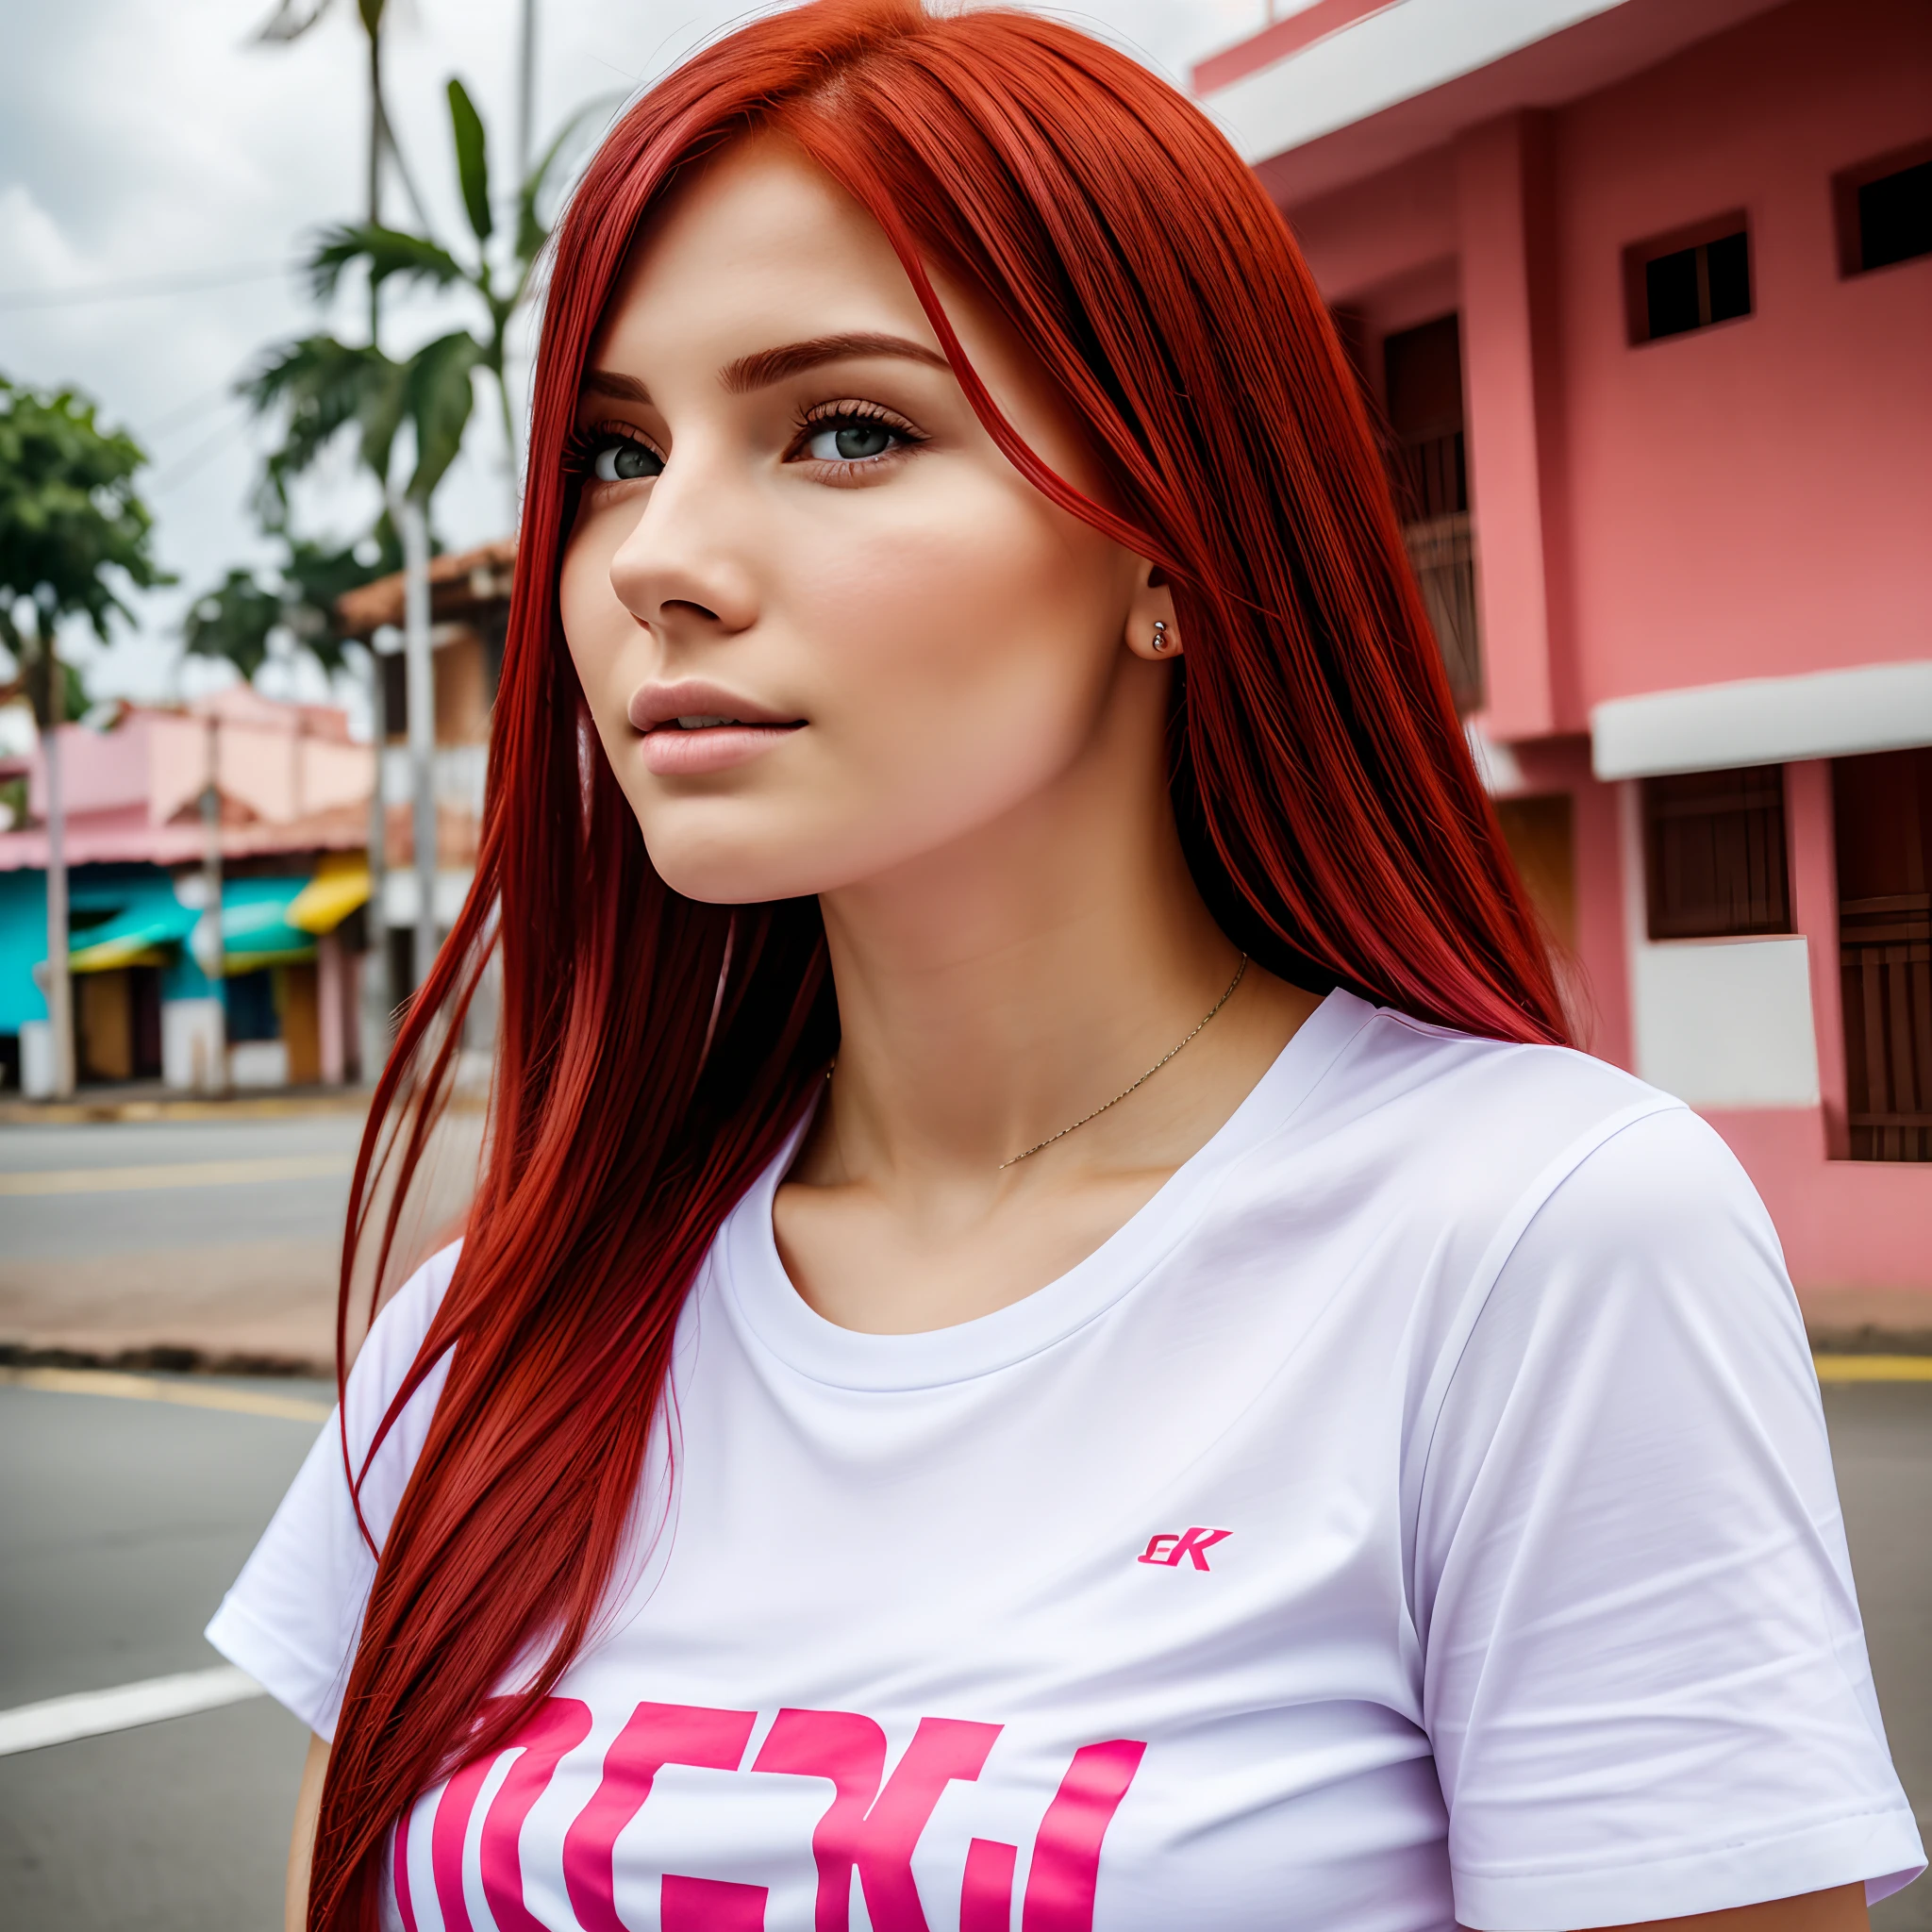 uma linda mulher, ((Pele branca)), com cabelo ruivo, camiseta rosa, tanta definição quanto possível, 8K, na cidade de Barranquilla Colômbia.